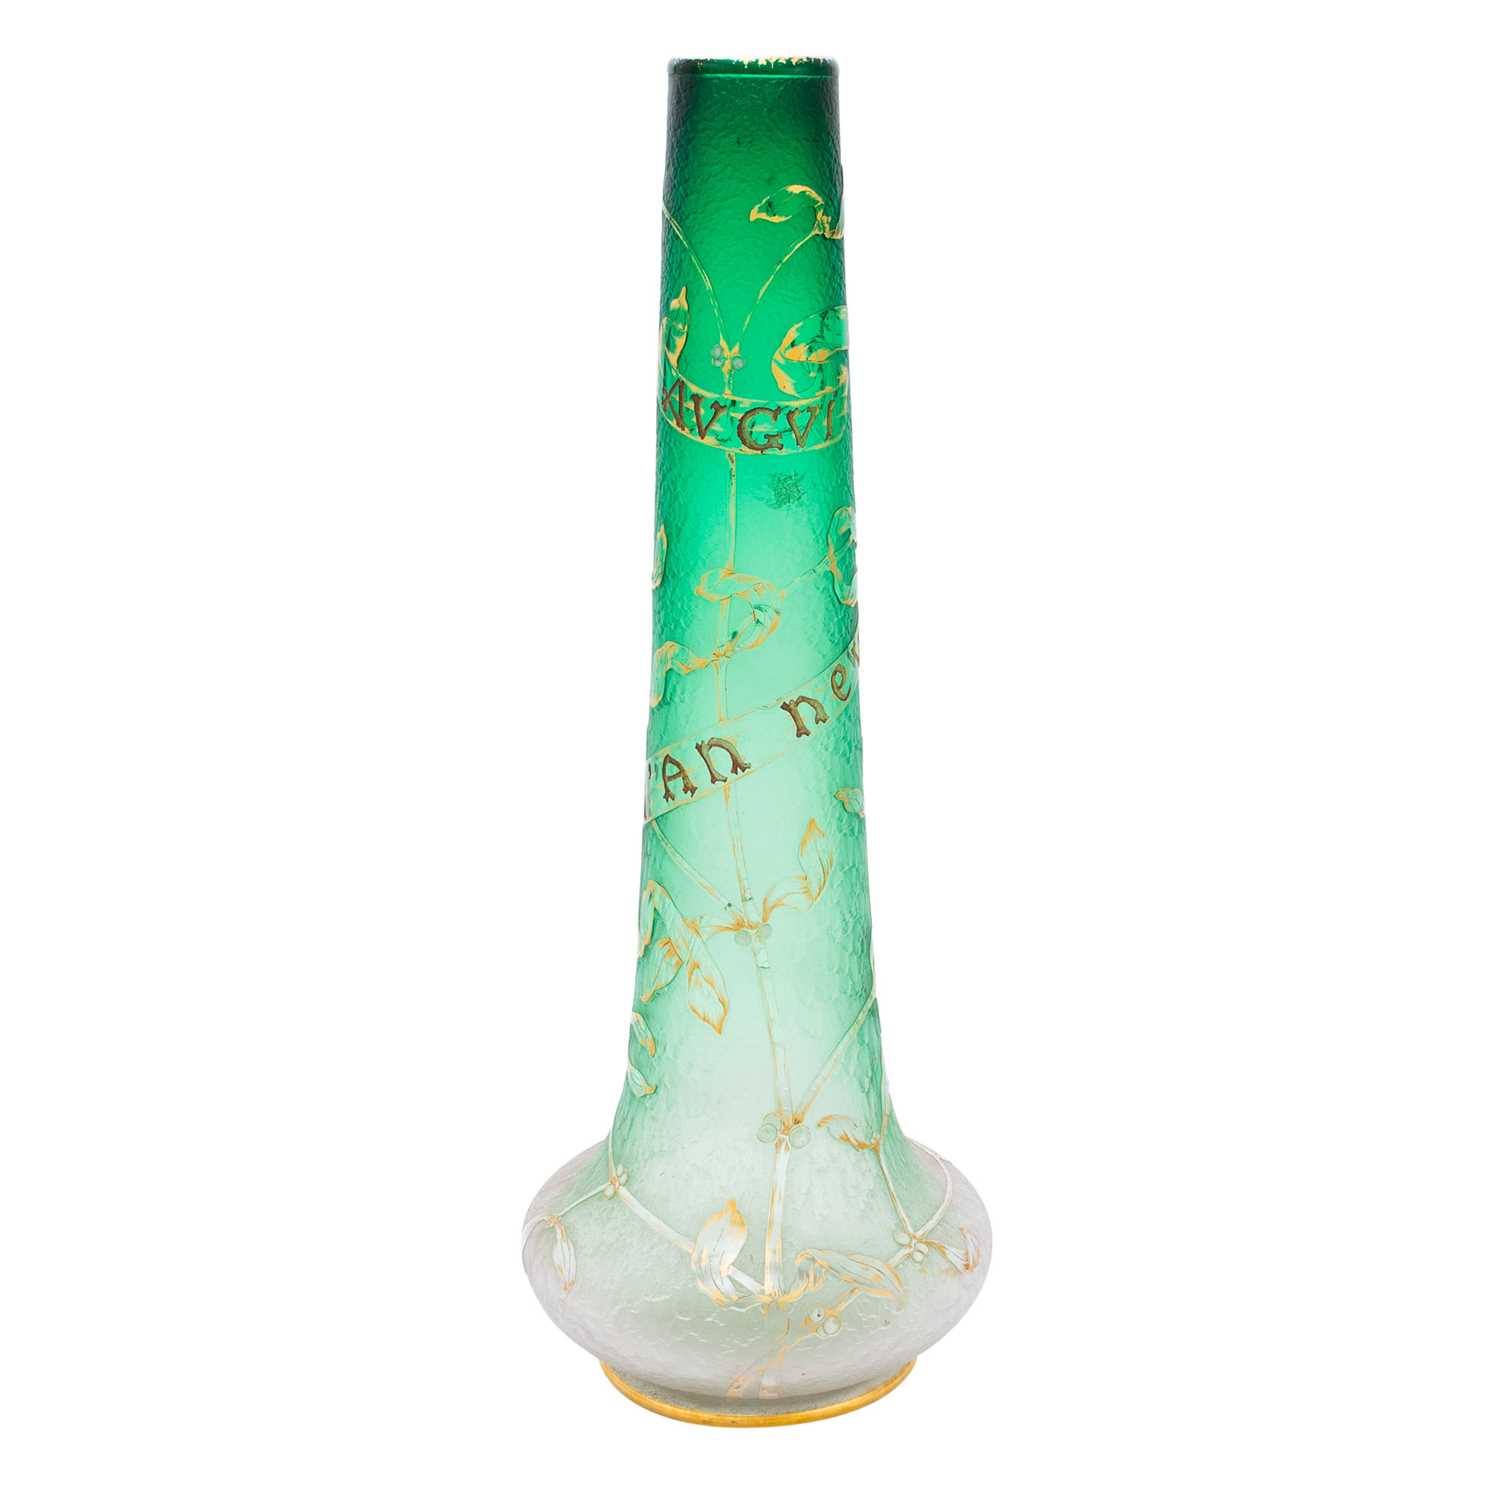 Lot 461 - Daum Art Nouveau Gilt, Acid-Etched and Enameled Glass Vase